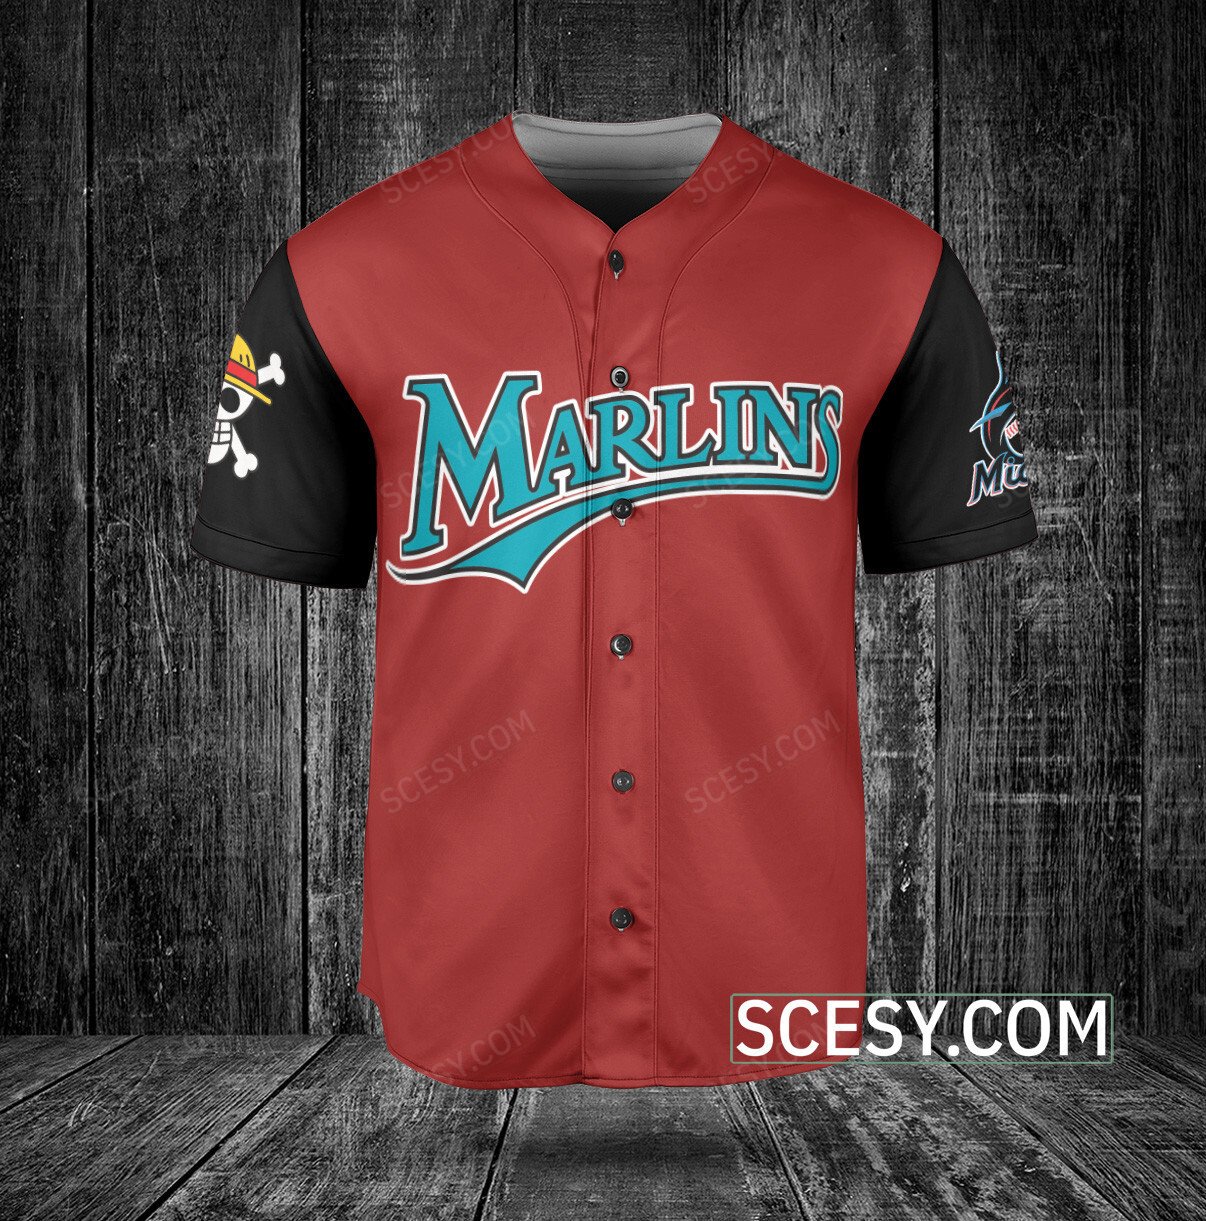 Miami Marlins Jersey, Marlins Baseball Jerseys, Uniforms